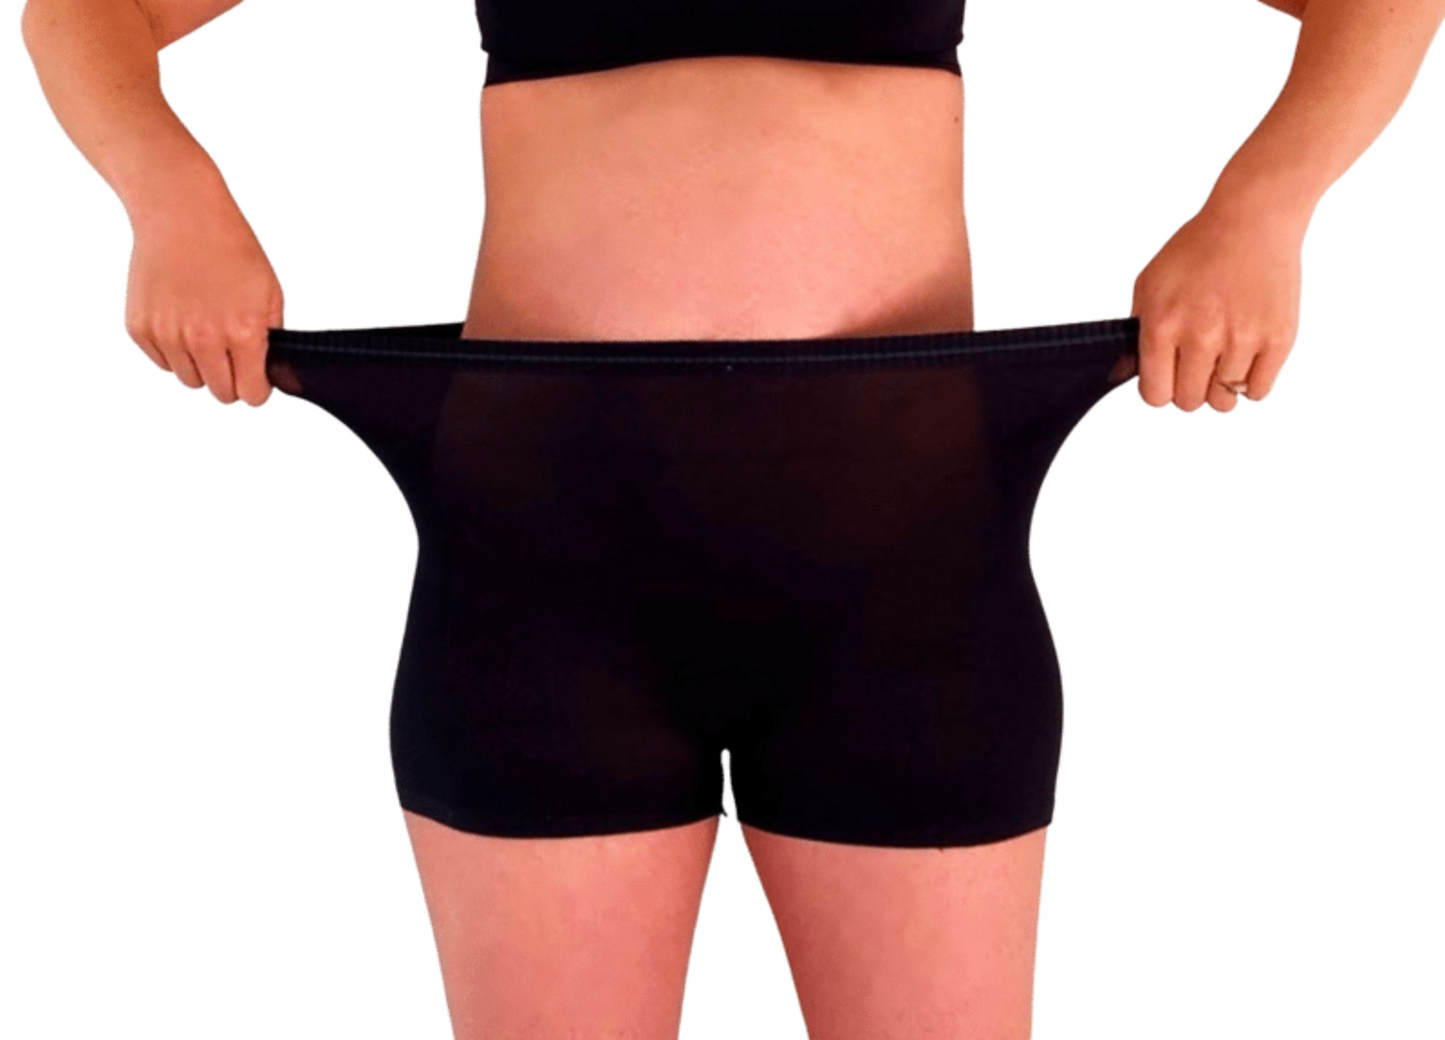 Short-Term Use Postpartum Underwear - 4 Pack